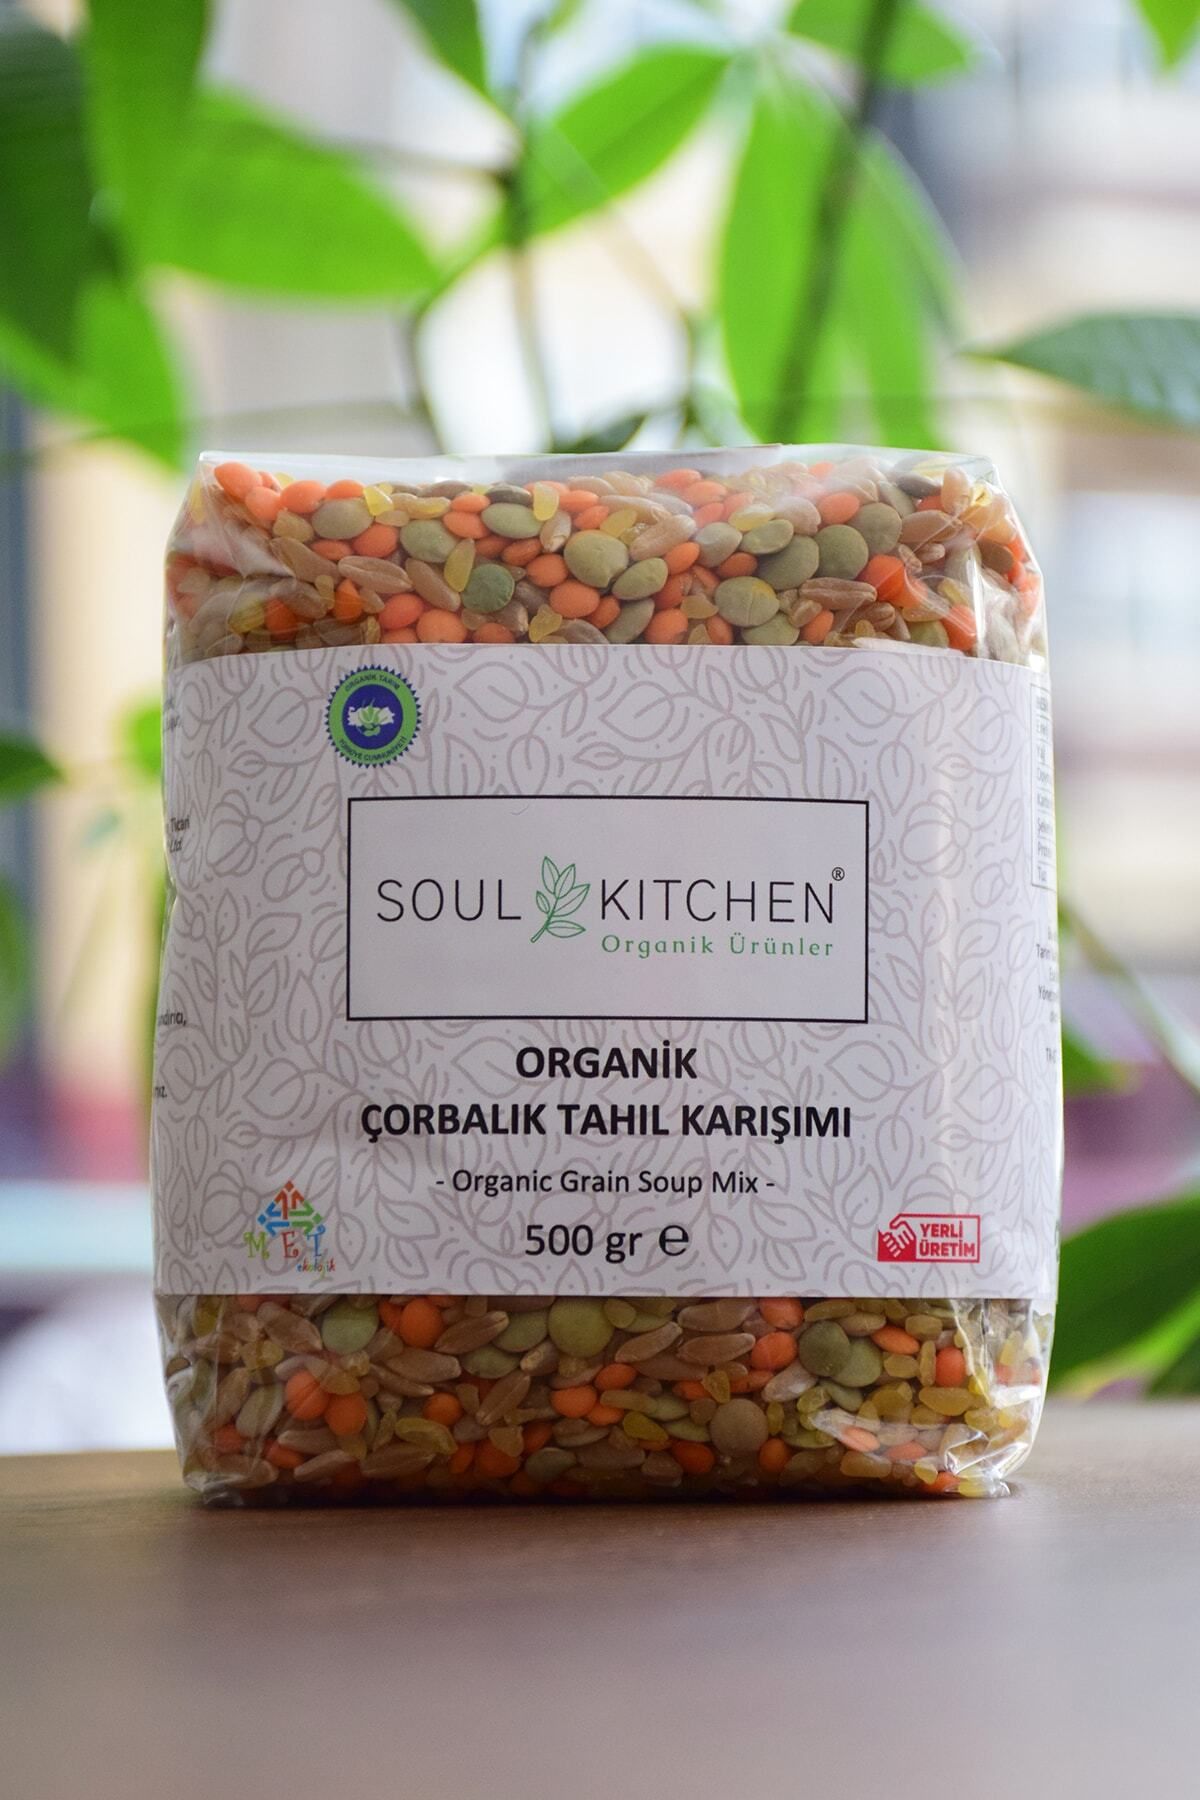 Soul Kitchen Organik Ürünler Organik Çorbalık Tahıl Karışımı 500gr